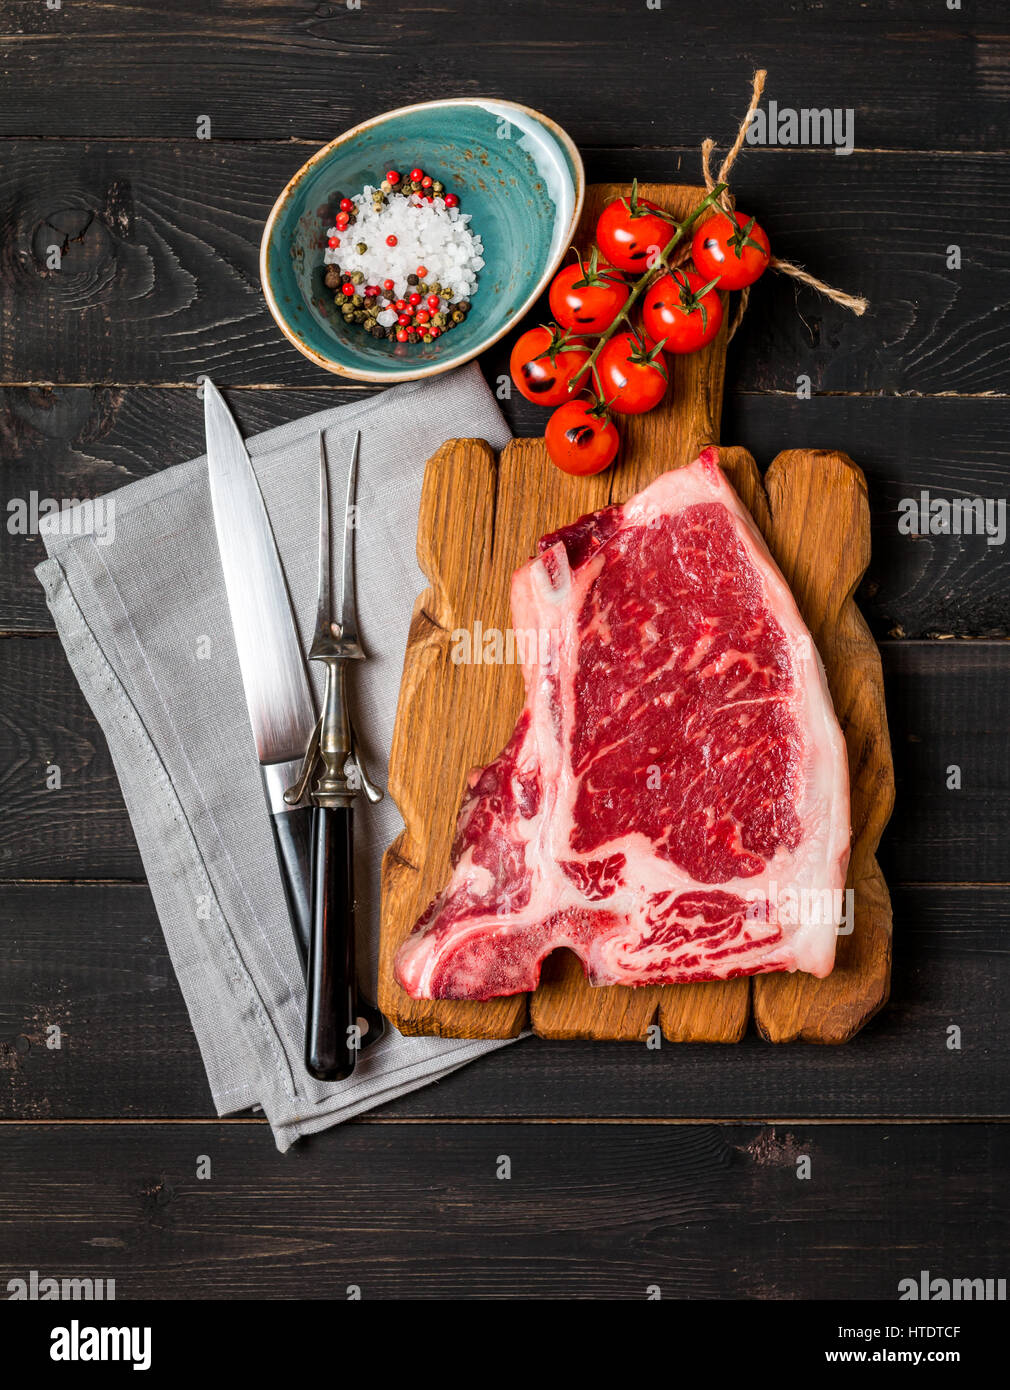 La viande fraîche de matières premières, de l'expérience et du steak Club fourchette et couteau de viande sur fond de bois sombre, vue du dessus Banque D'Images